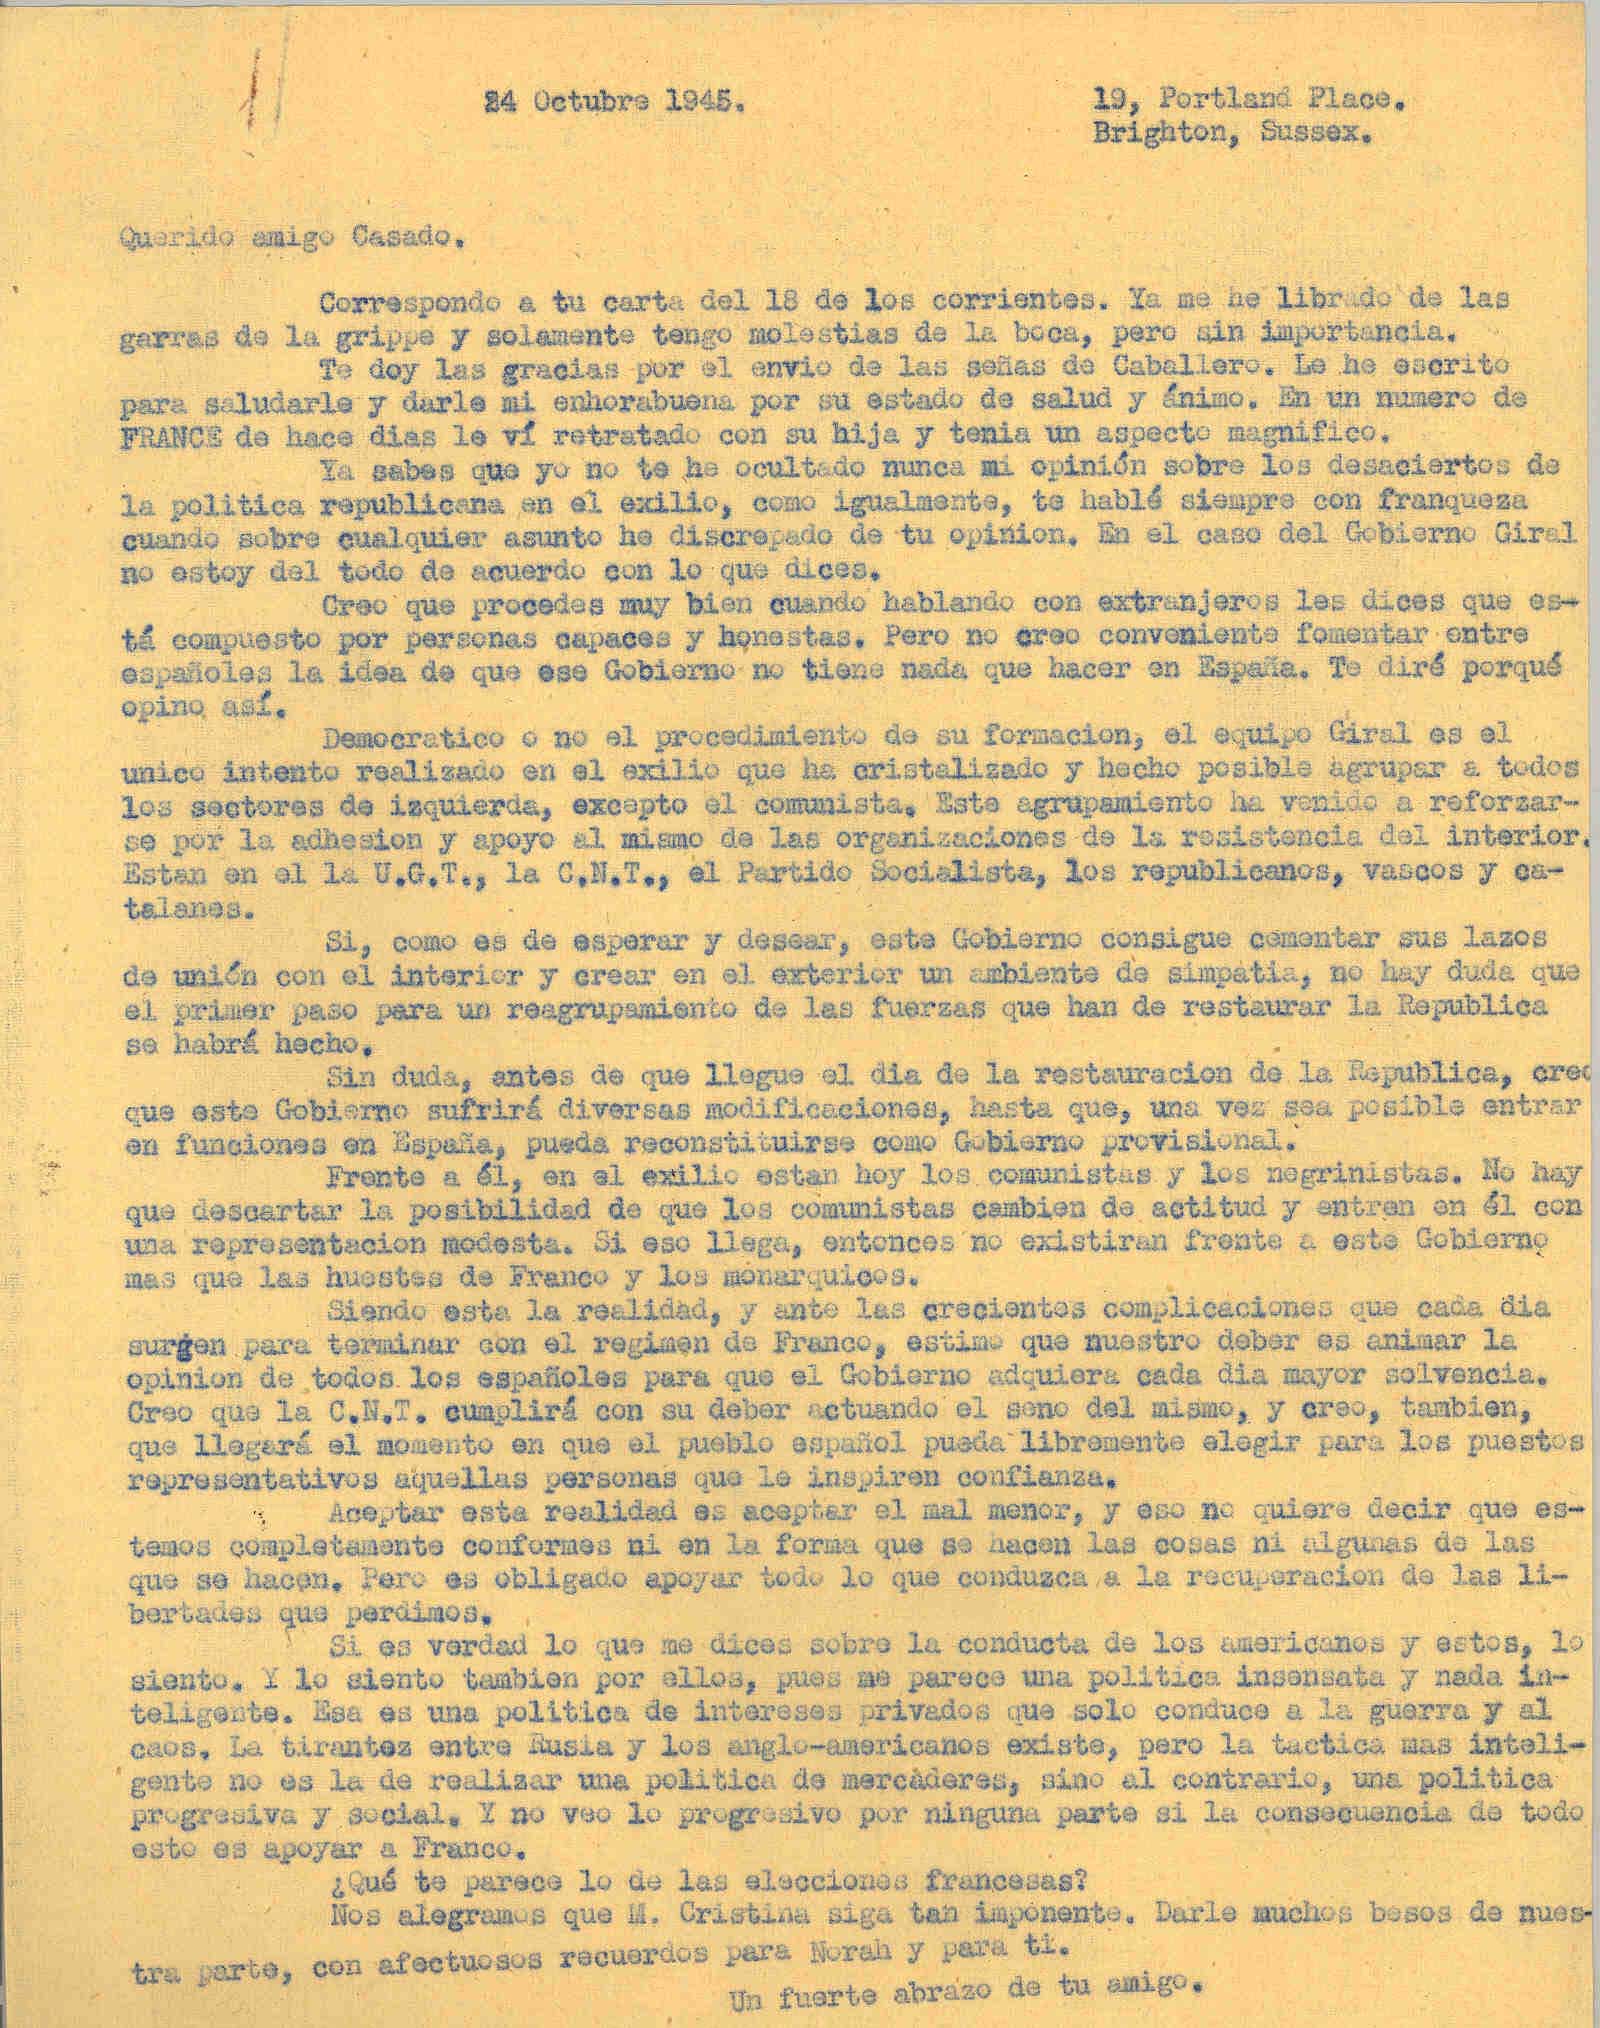 Carta a Segismundo Casado explicando el lado bueno de la formación del gobierno Giral en el exilio para una restauración republicana en España.